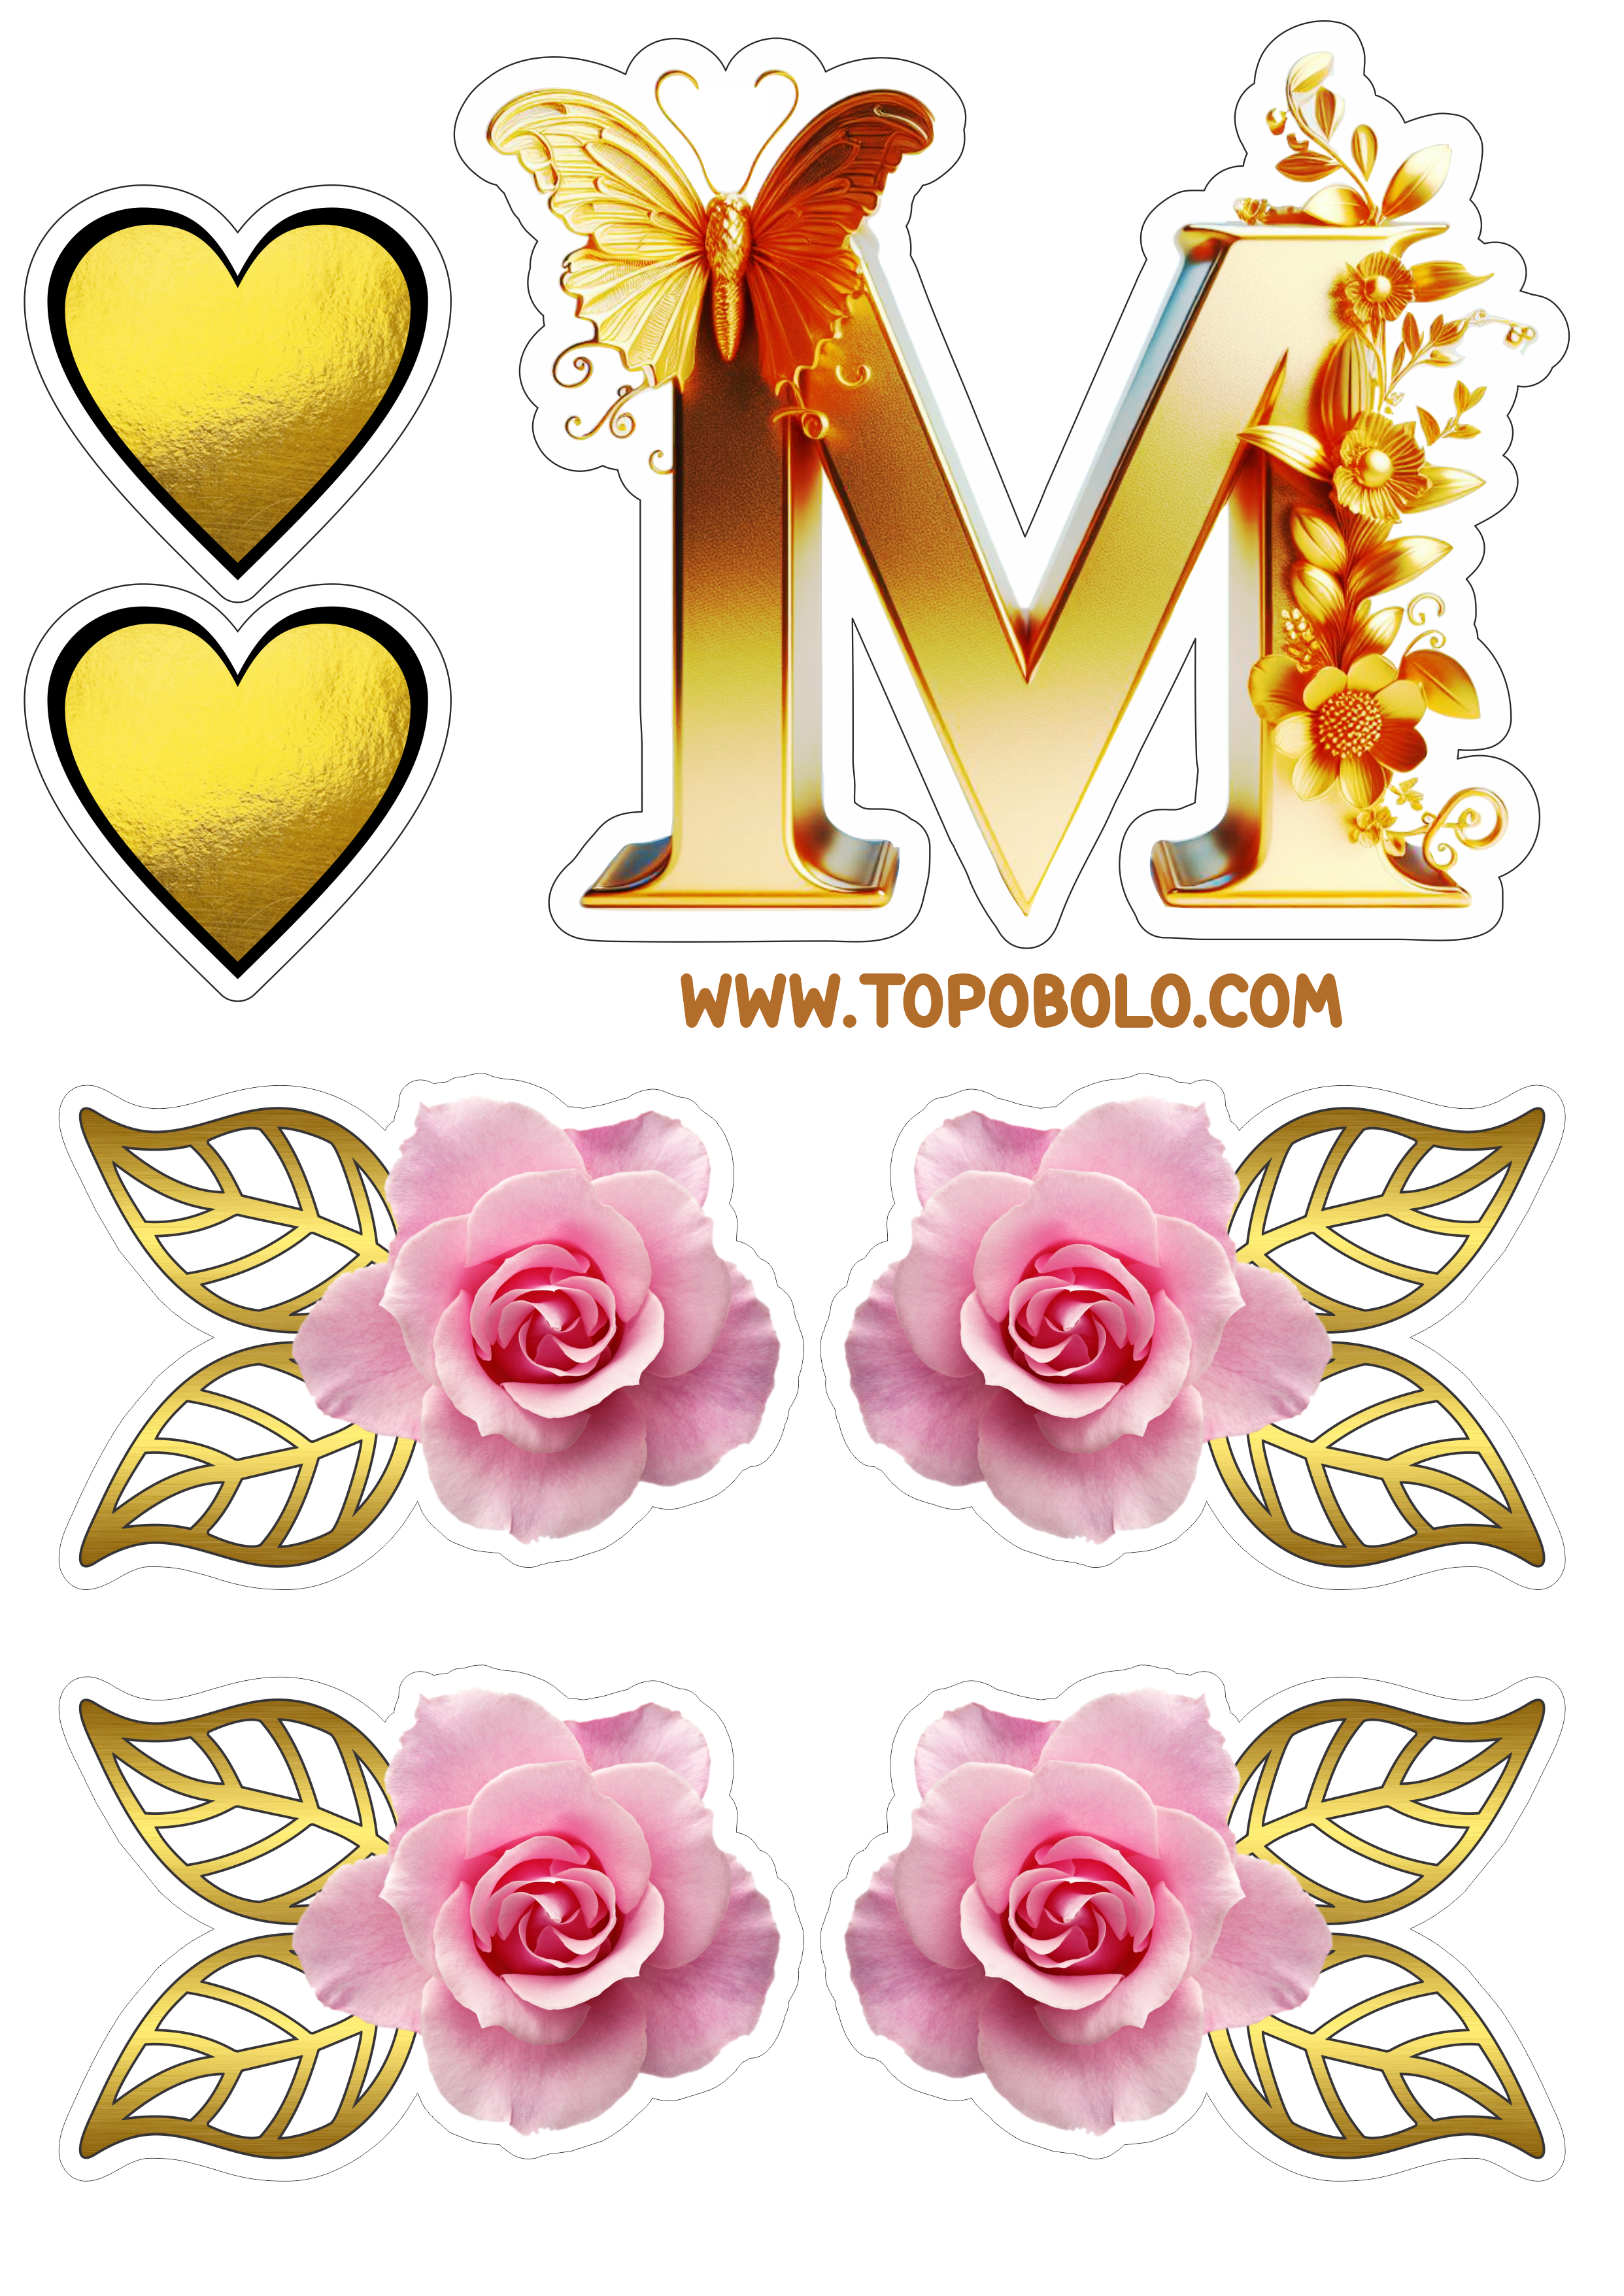 Topo de bolo dia das mães dourado flores e corações rosa pronto para imprimir png